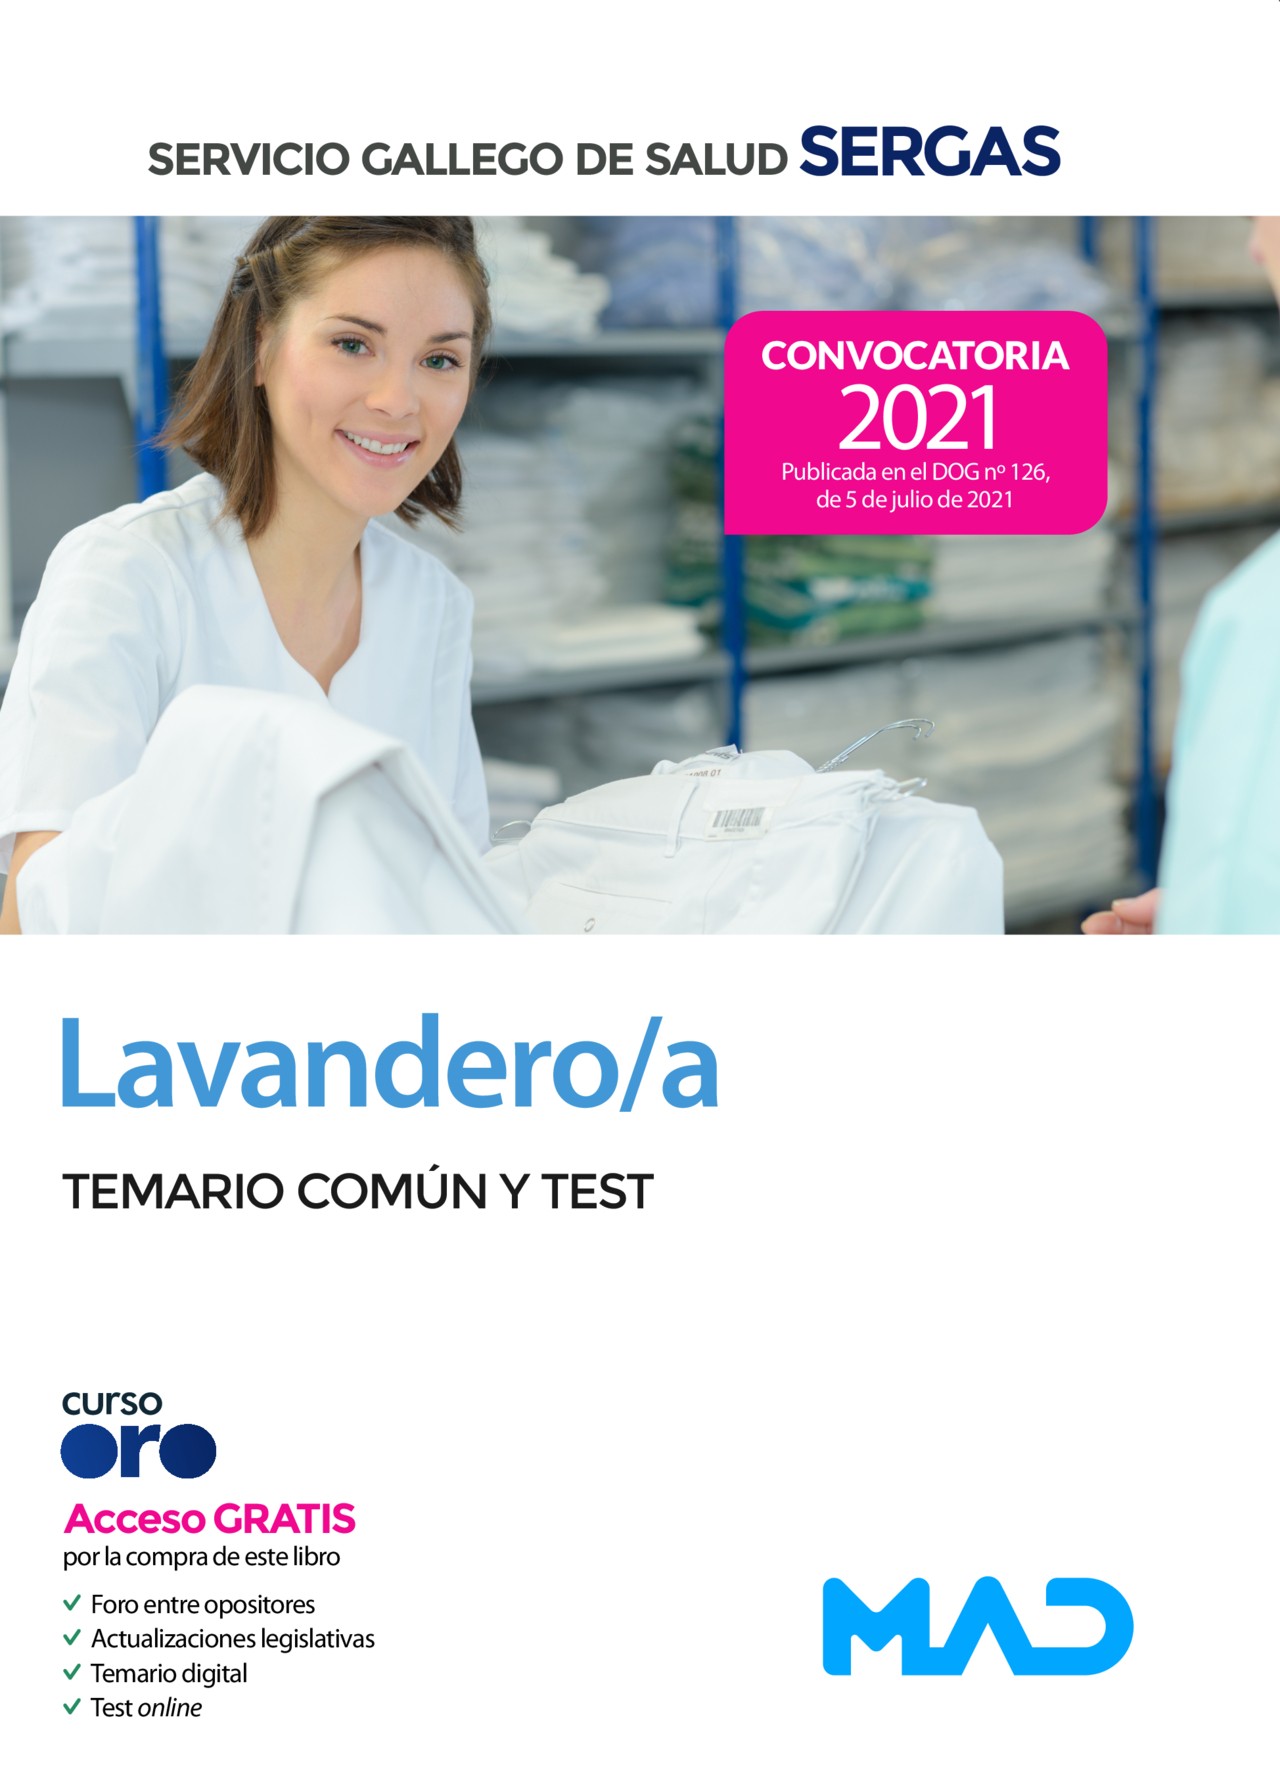 Lavandero/a Temario Común y test